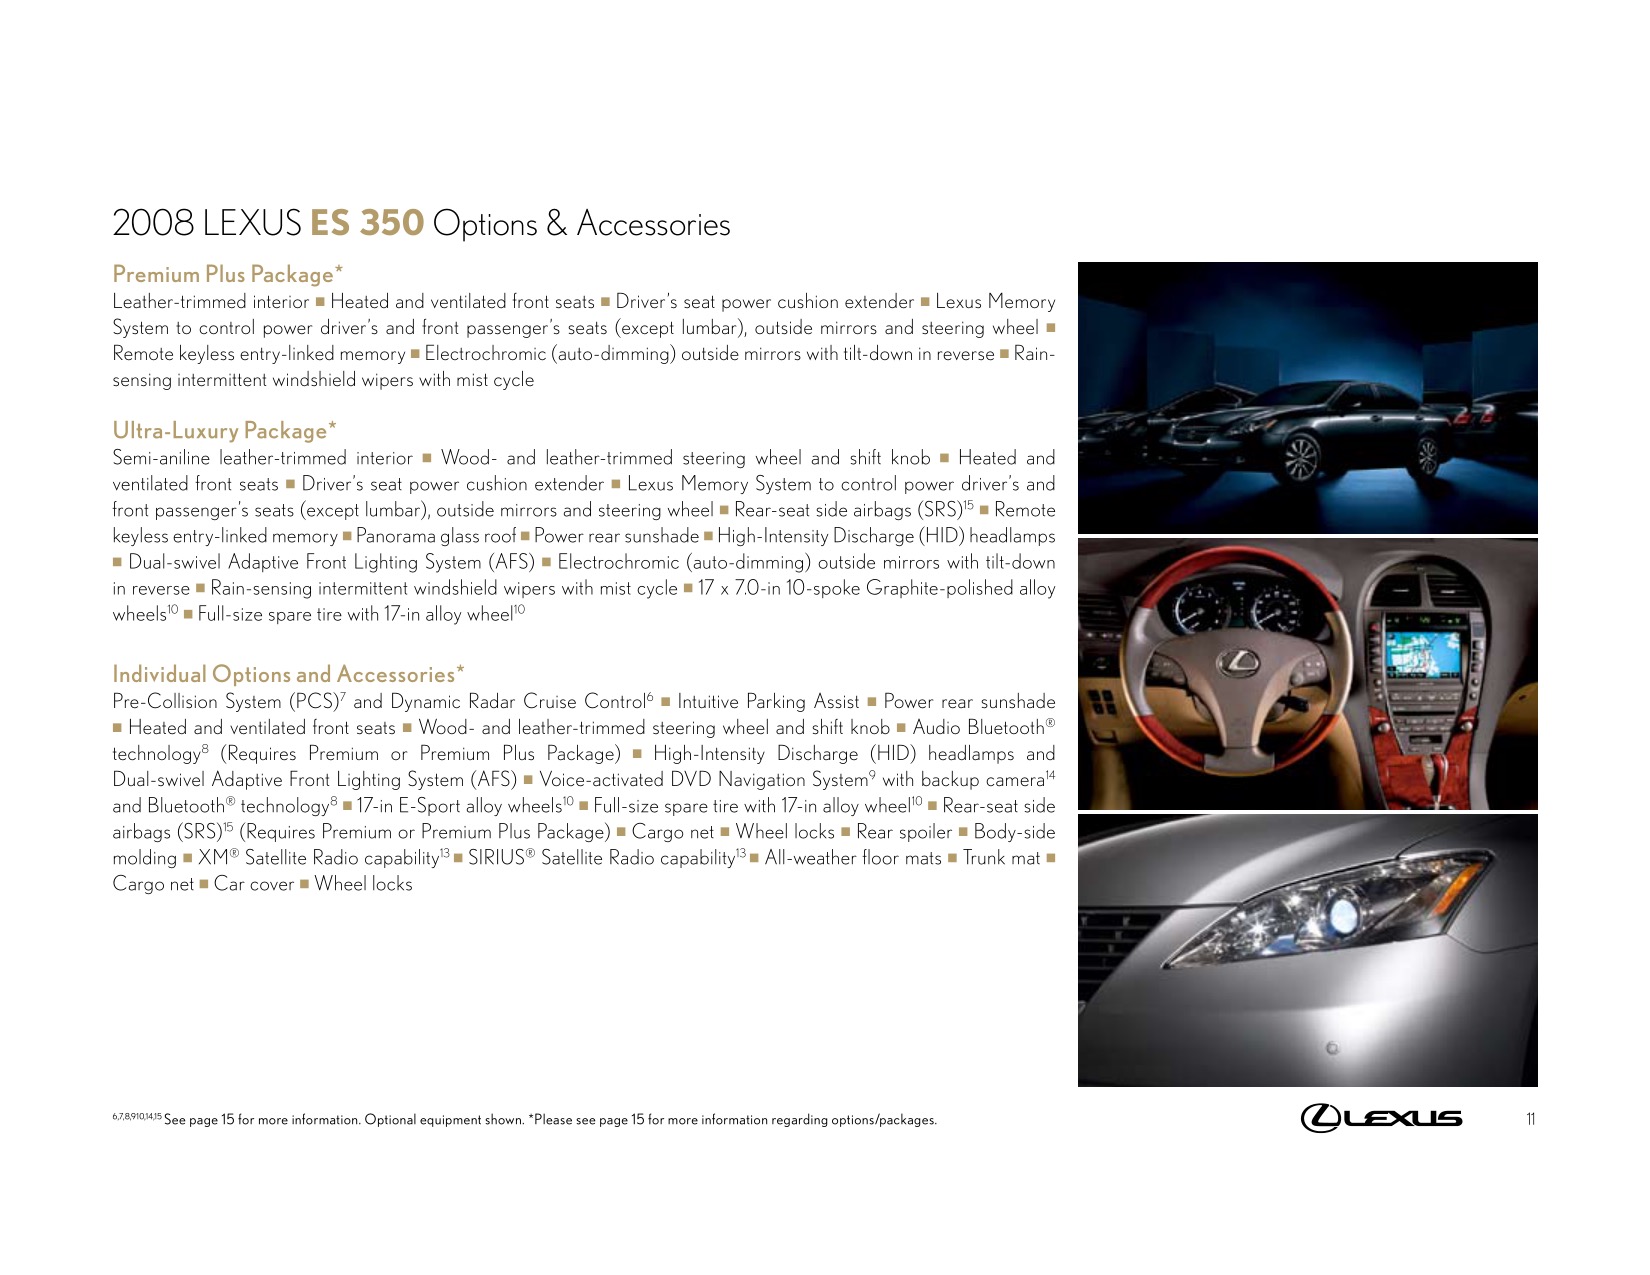 2008 Lexus ES ES330 28-page Original Car Sales Brochure Booklet 